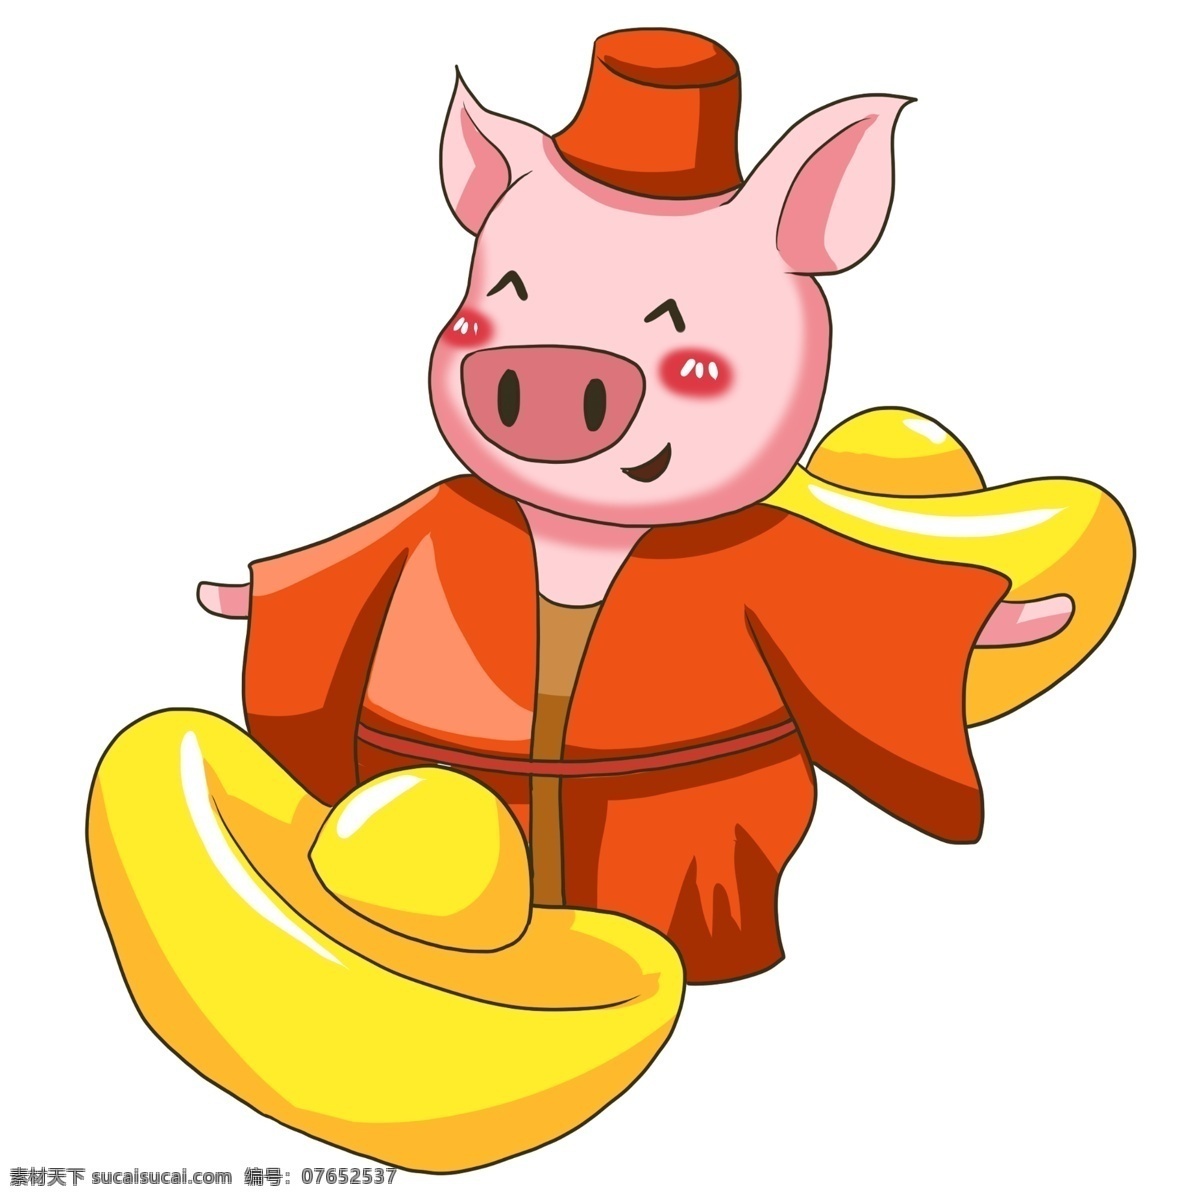 卡通 动物 可爱 粉色 小 猪 元宝 金子 卡通小猪猪 母猪 卡通动物 可爱动物 粉色小猪 卡通的 粉色的